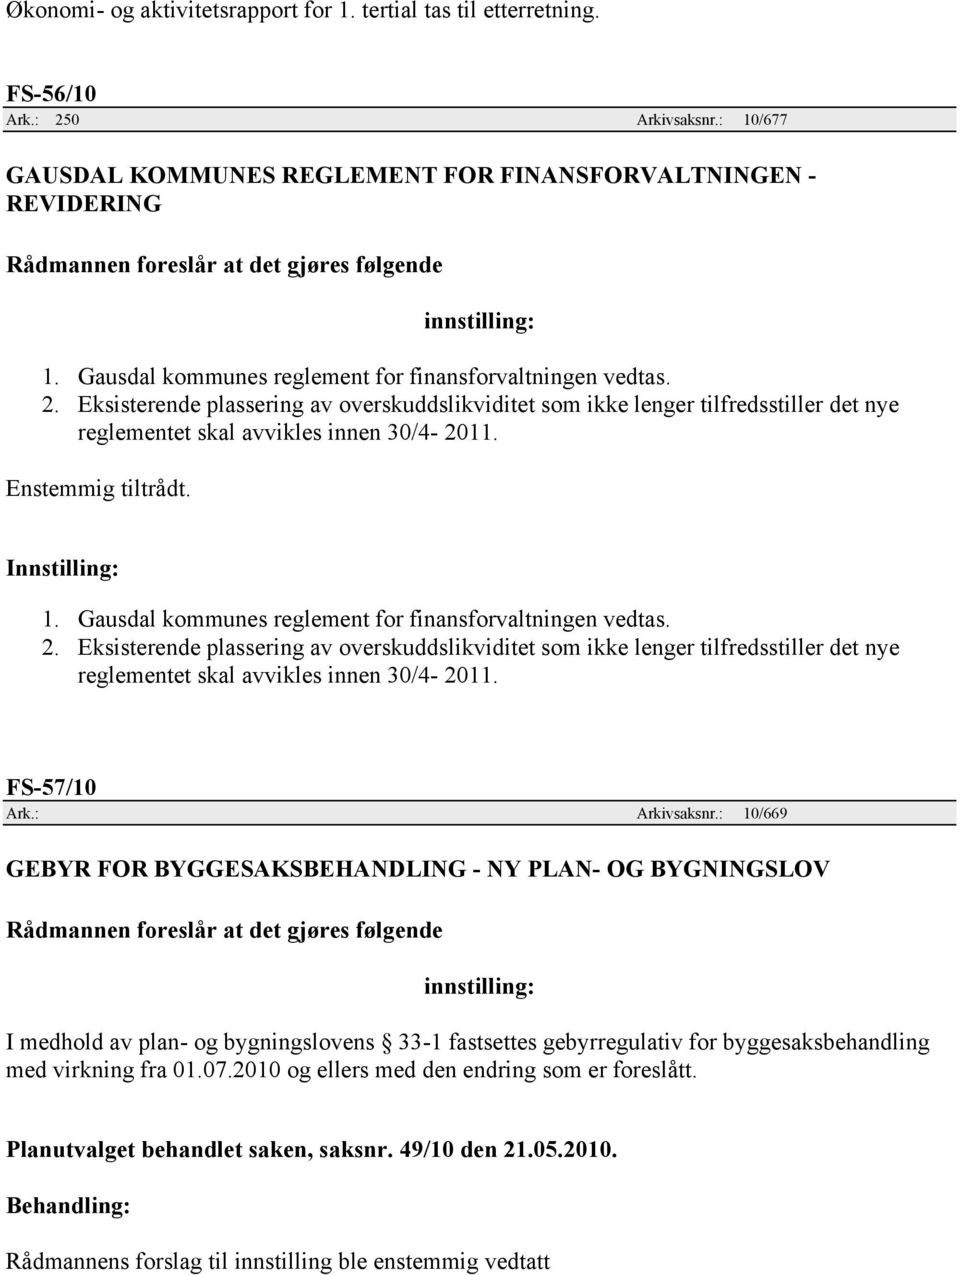 Gausdal kommunes reglement for finansforvaltningen vedtas. 2. Eksisterende plassering av overskuddslikviditet som ikke lenger tilfredsstiller det nye reglementet skal avvikles innen 30/4-2011.